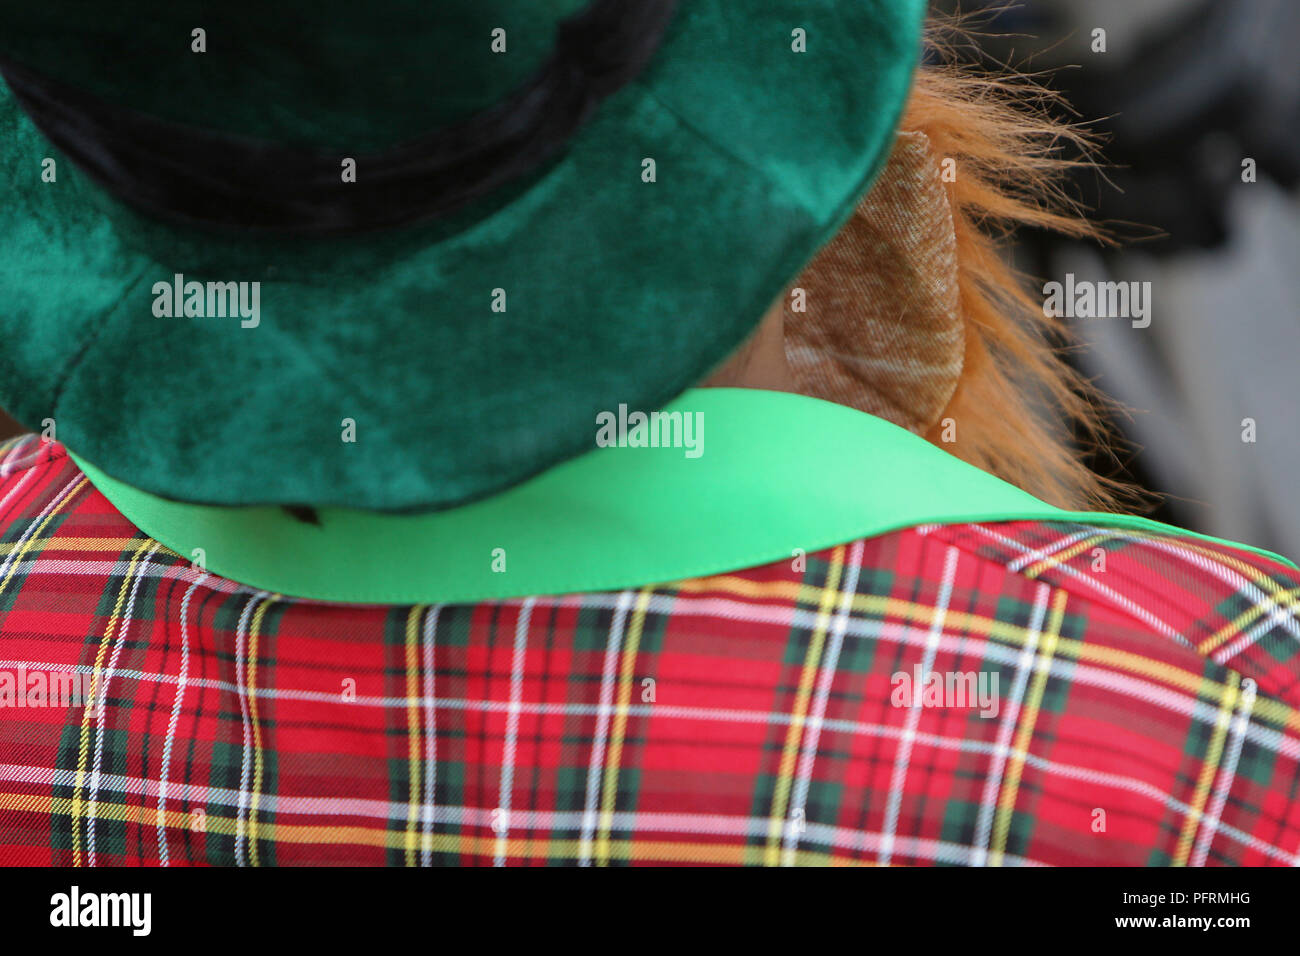 Irland, Dublin, St. Patrick's Day, Nachtschwärmer das Tragen von grünen Hut, tartan Jacke und orange fake Bart, Ansicht von hinten Stockfoto